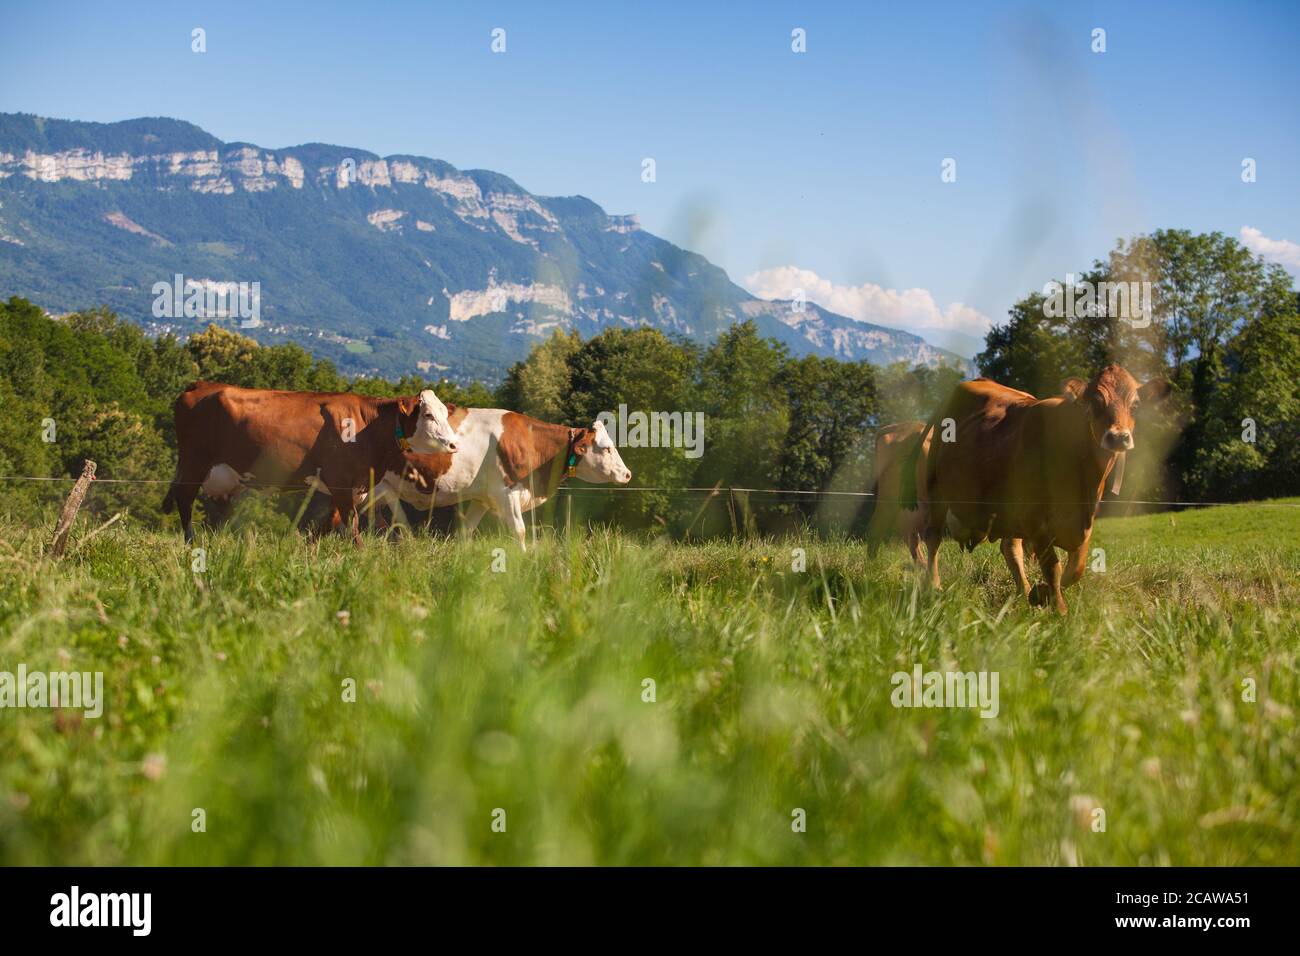 Mandria di vacche che produce latte per il formaggio Gruyere in Francia in primavera Foto Stock